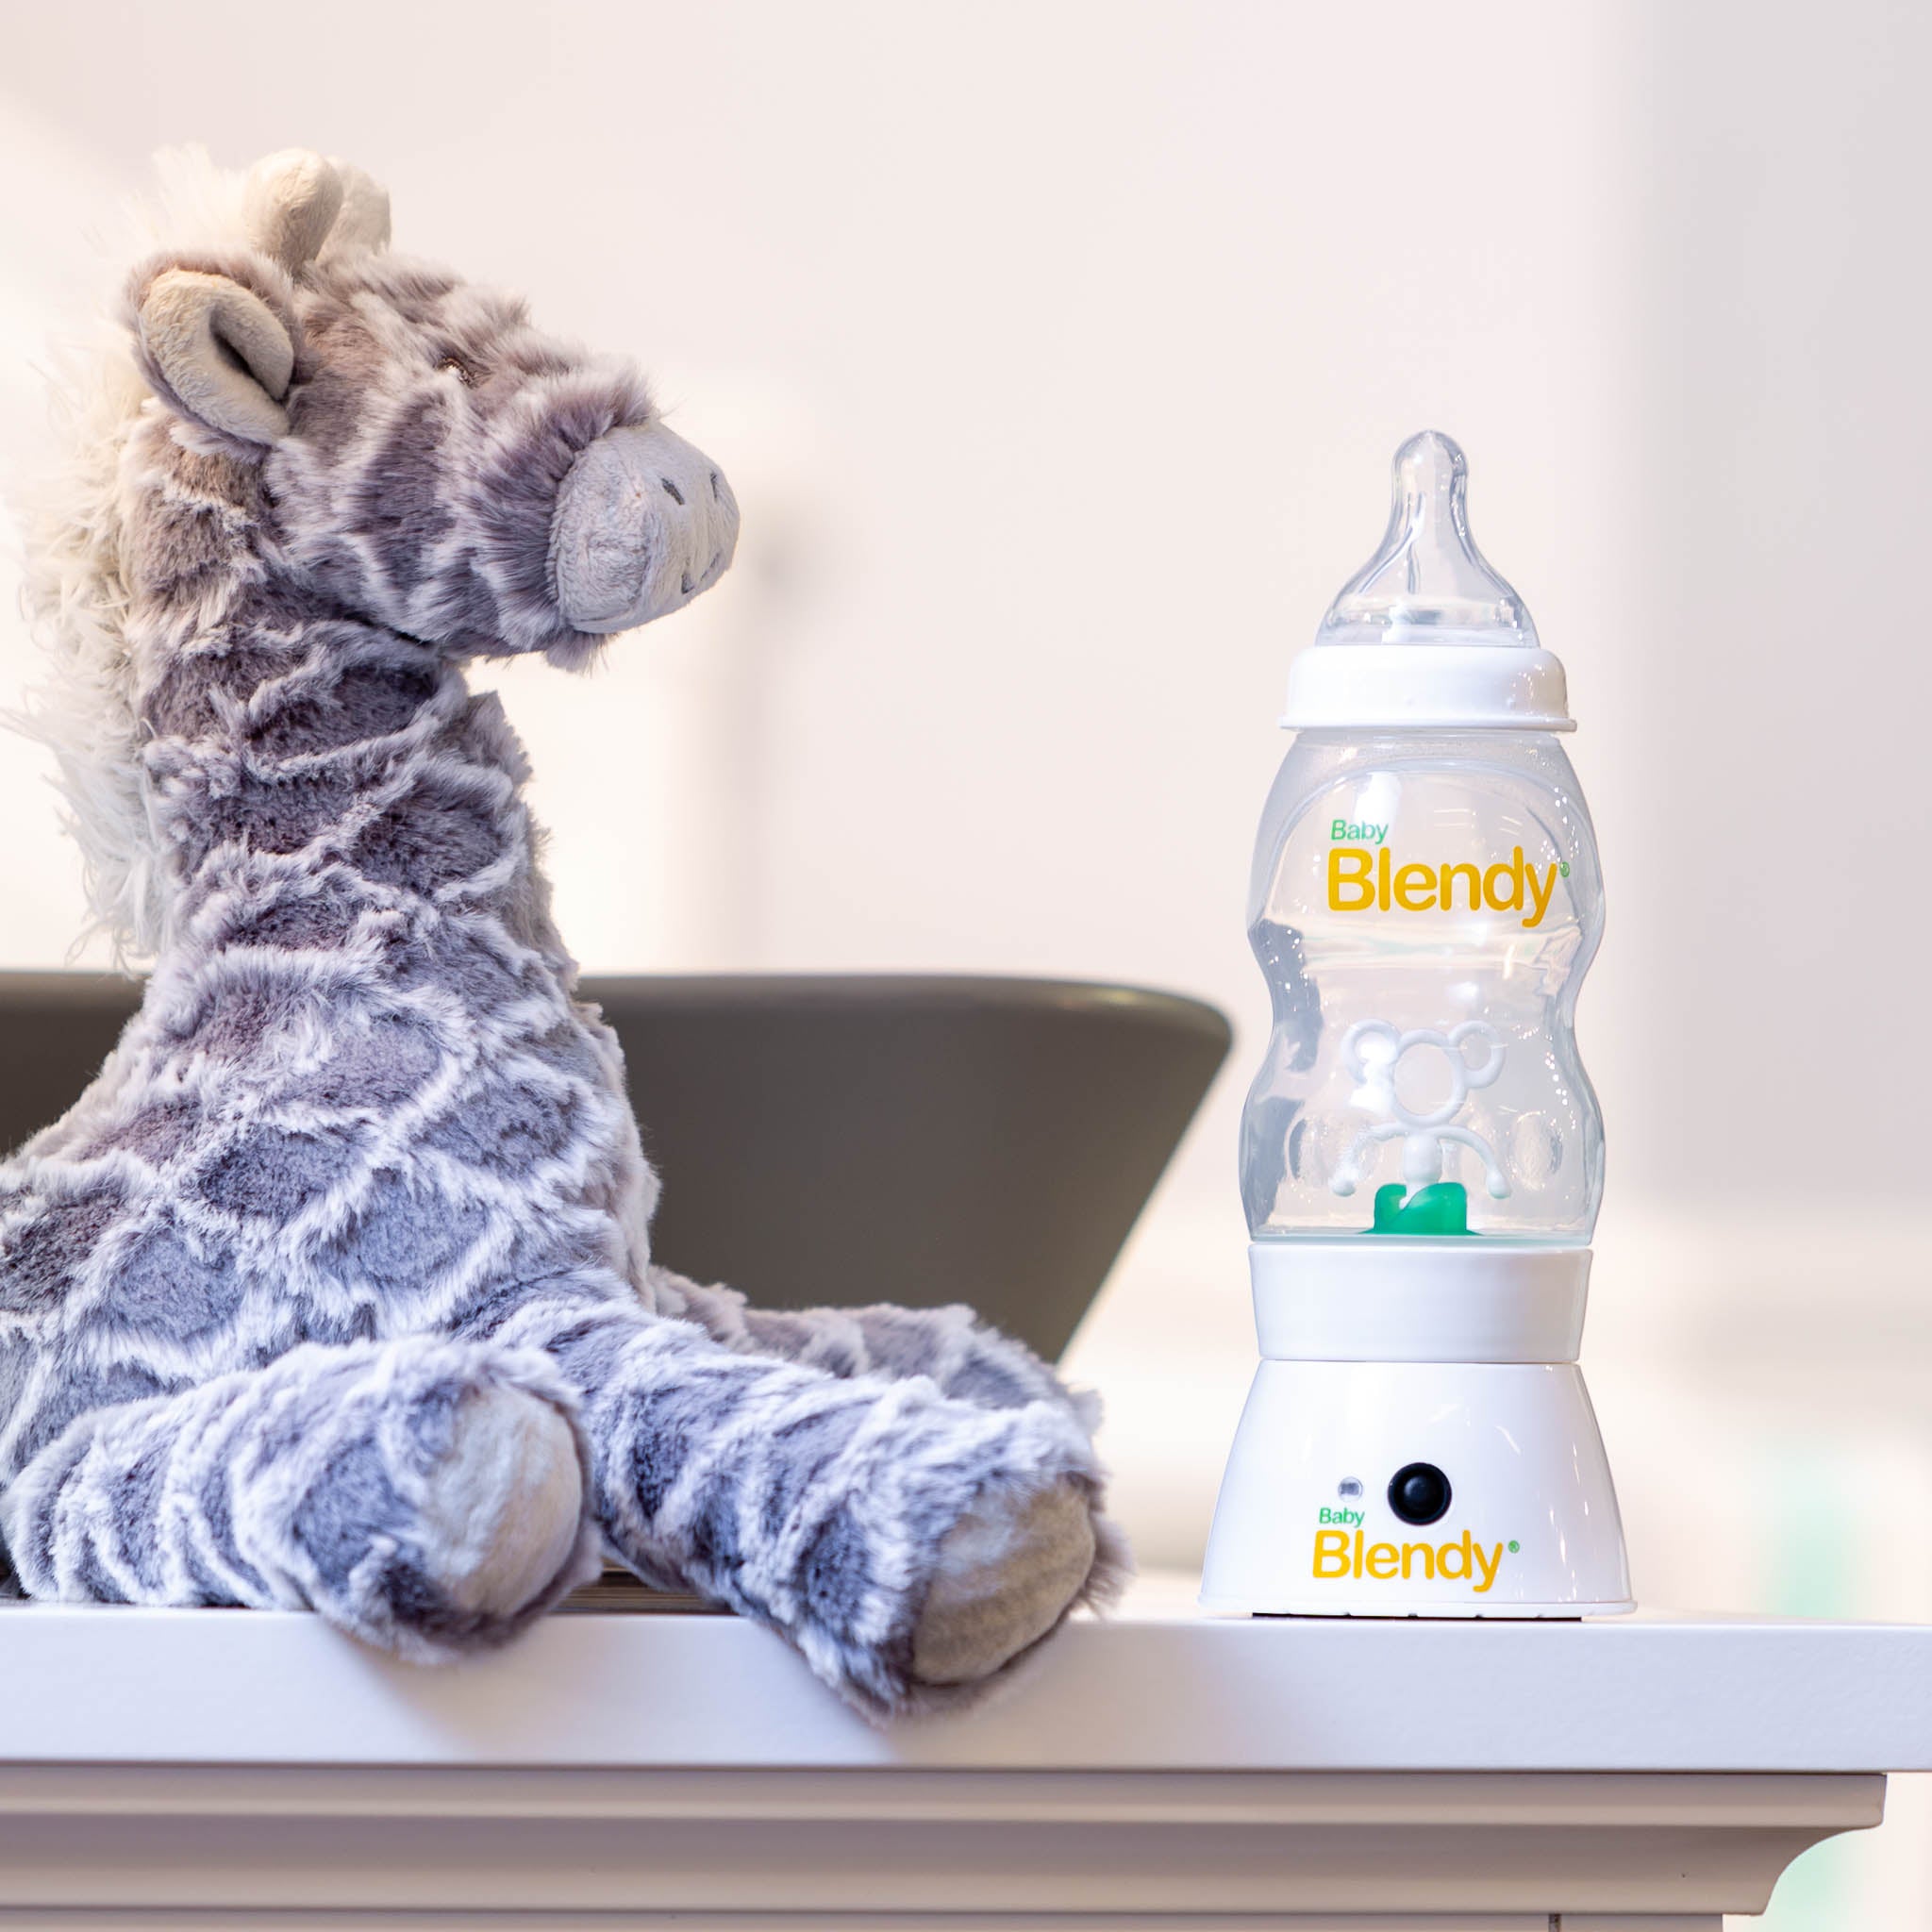 Baby Blendy - The Best Baby Bottle Blender